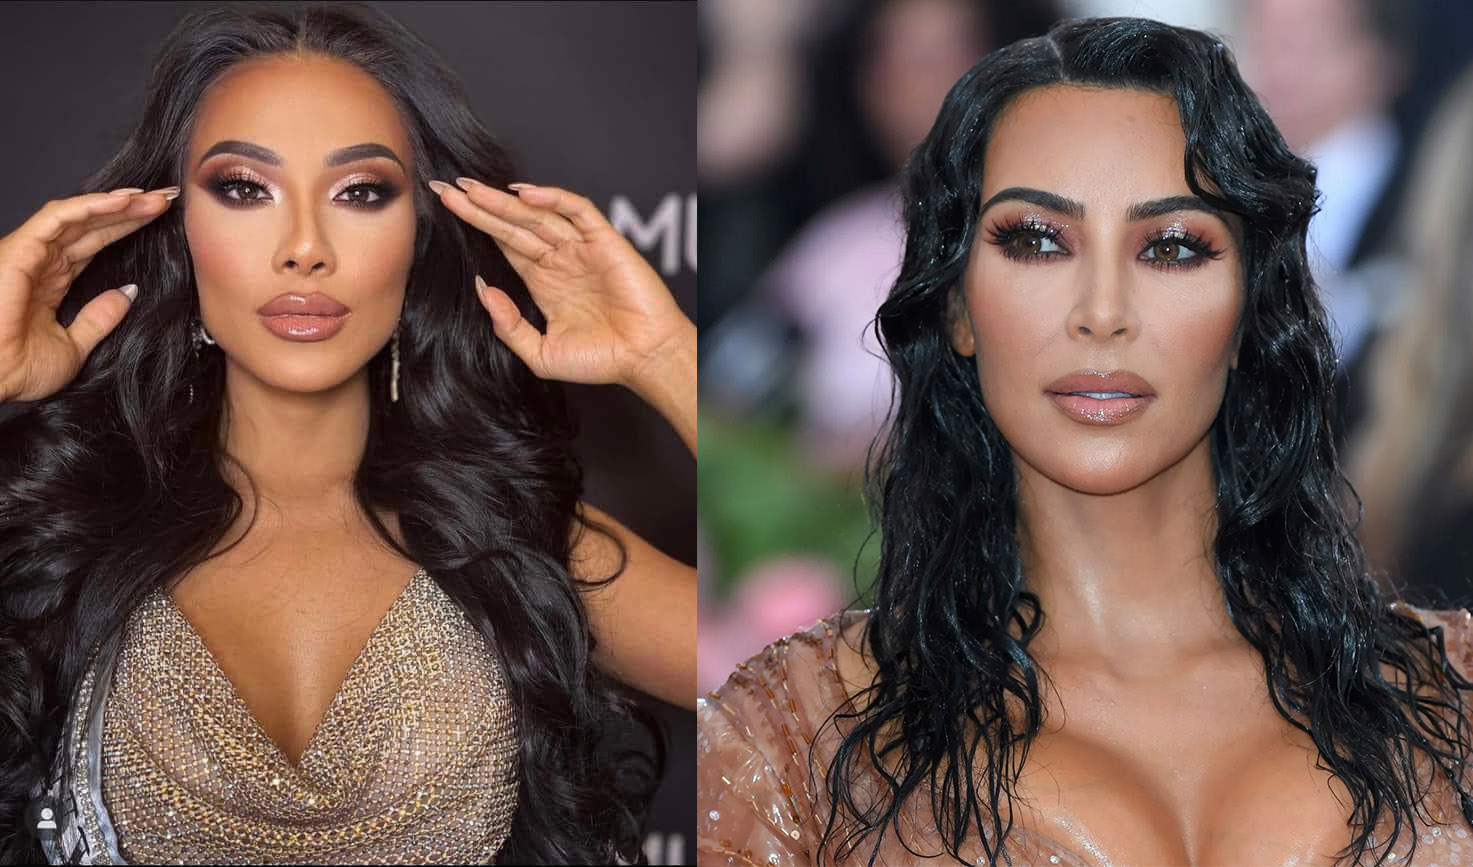 Từ mái tóc xoăn đến layout-out make-up của Kim Duyên đều làm người ta nghĩ đến Kim Kardashian.